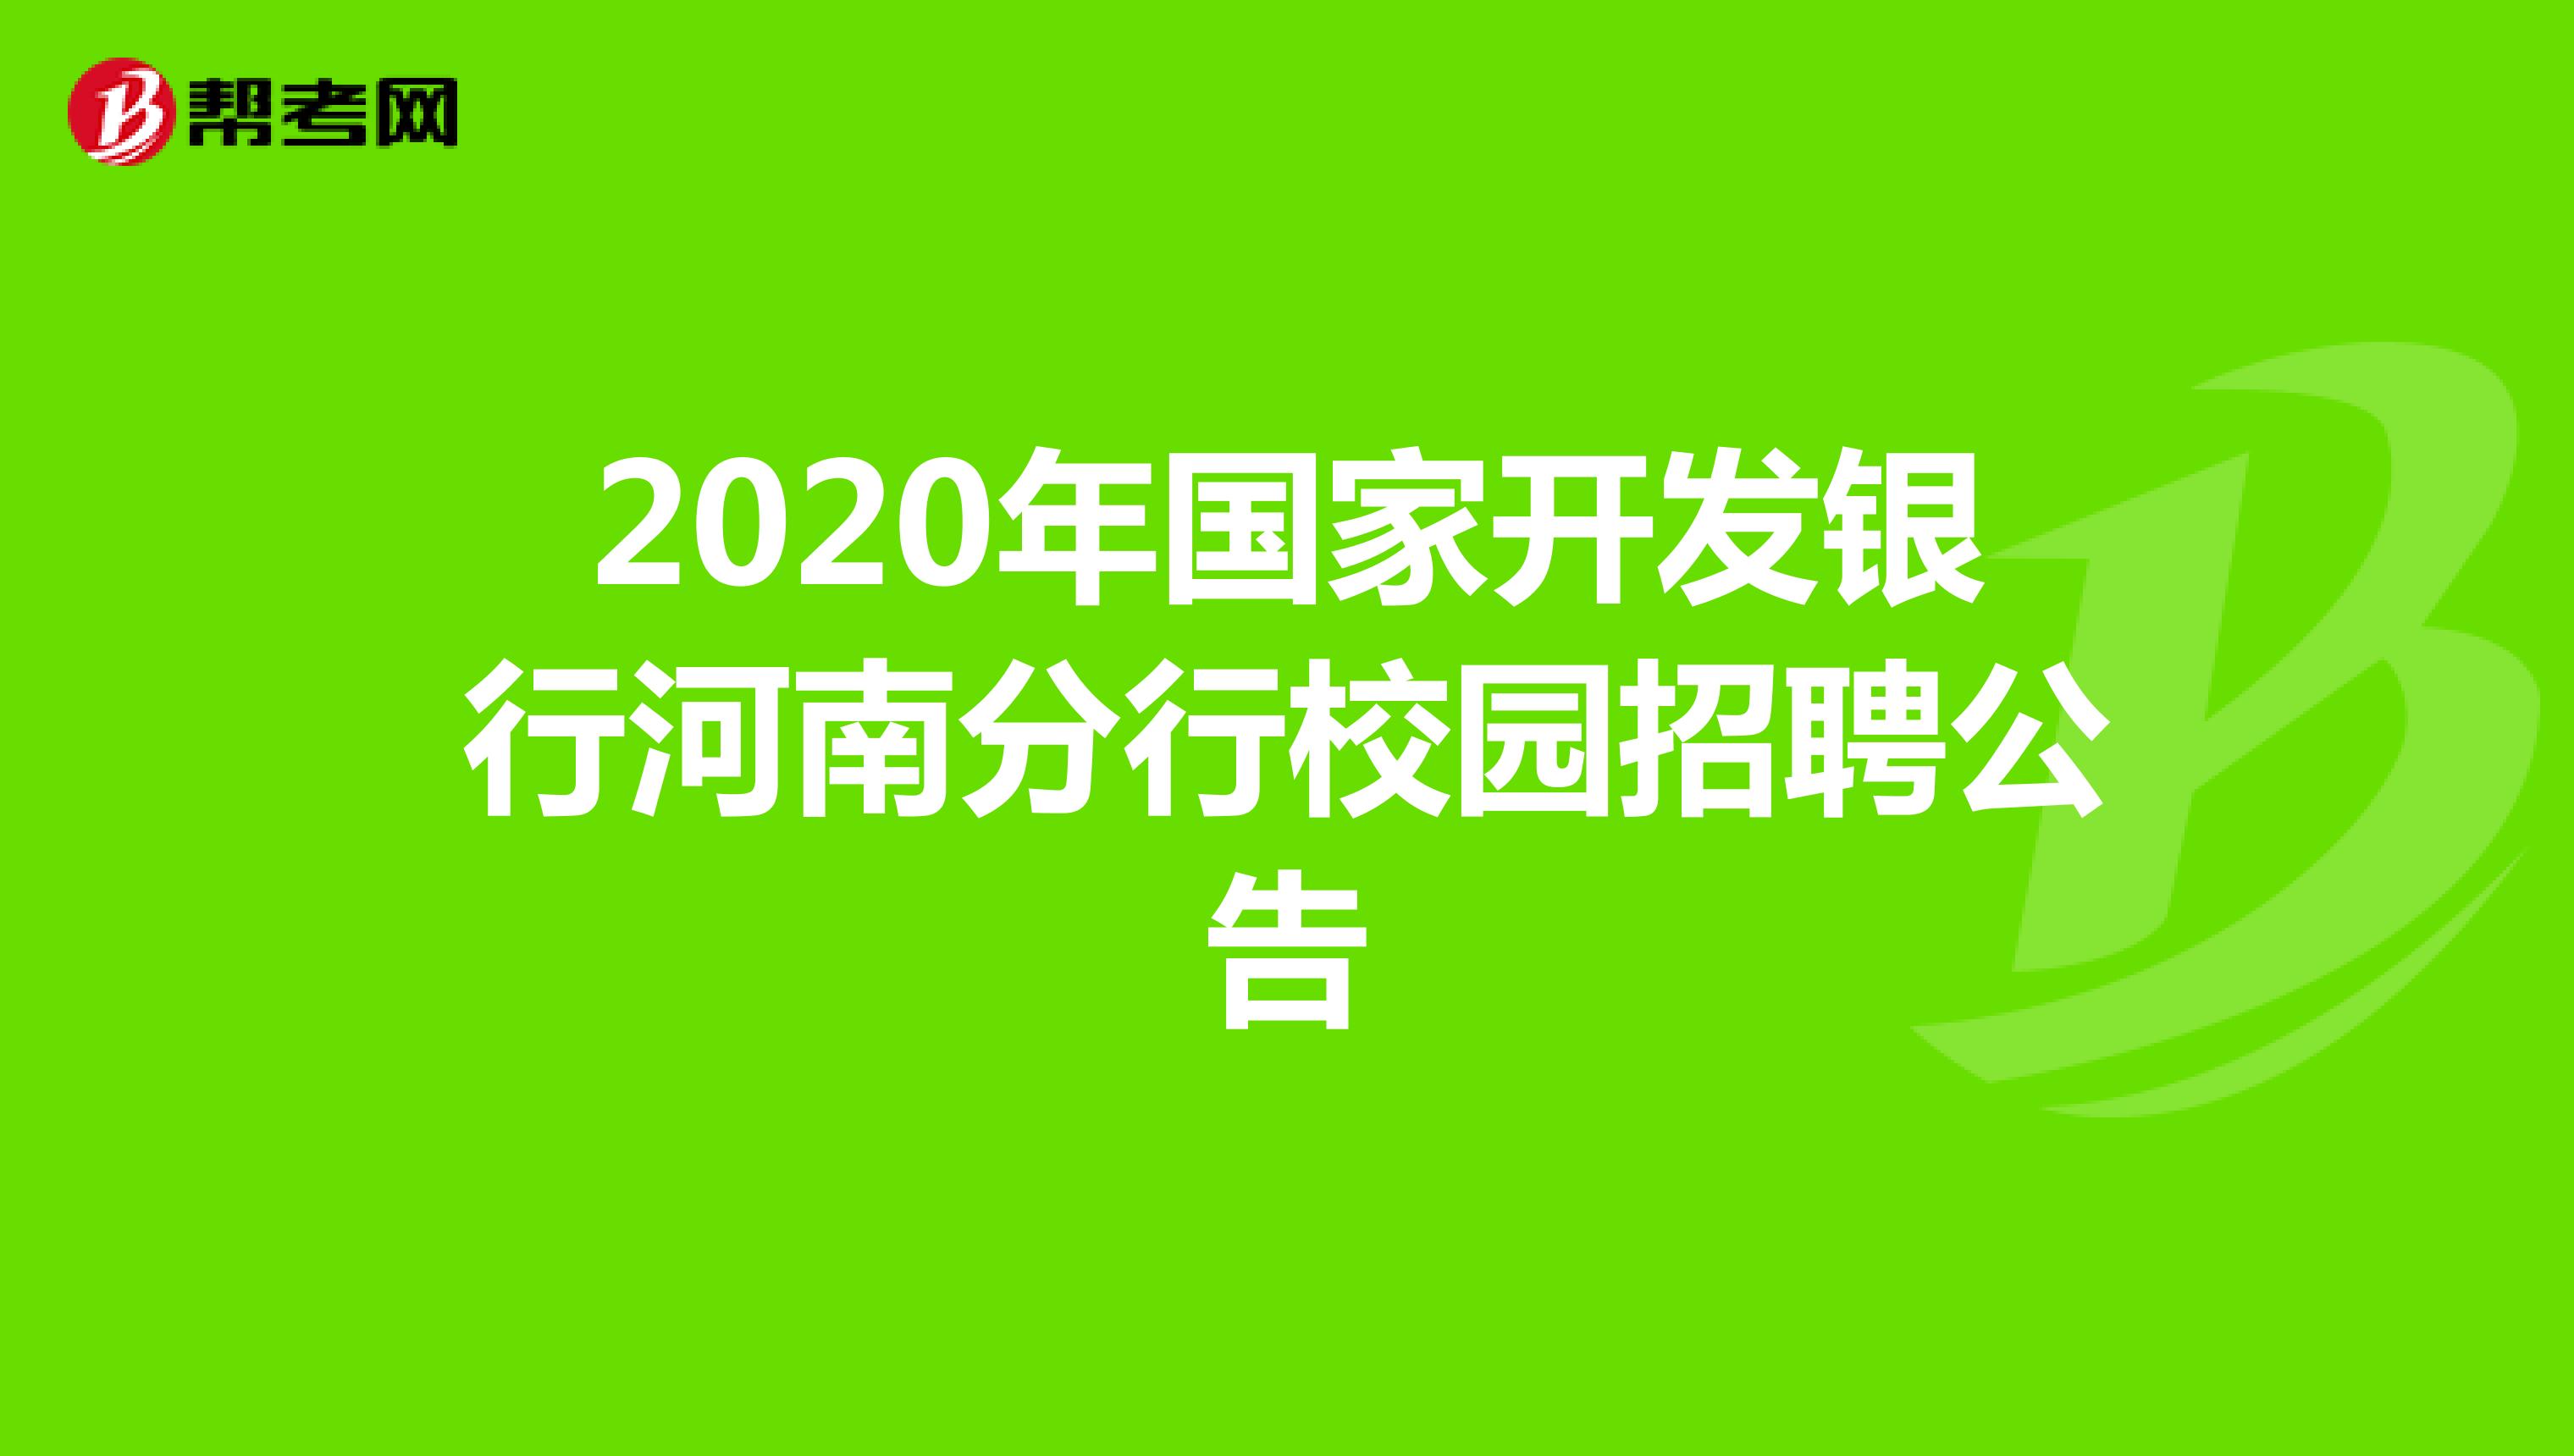 2020年国家开发银行河南分行校园招聘公告